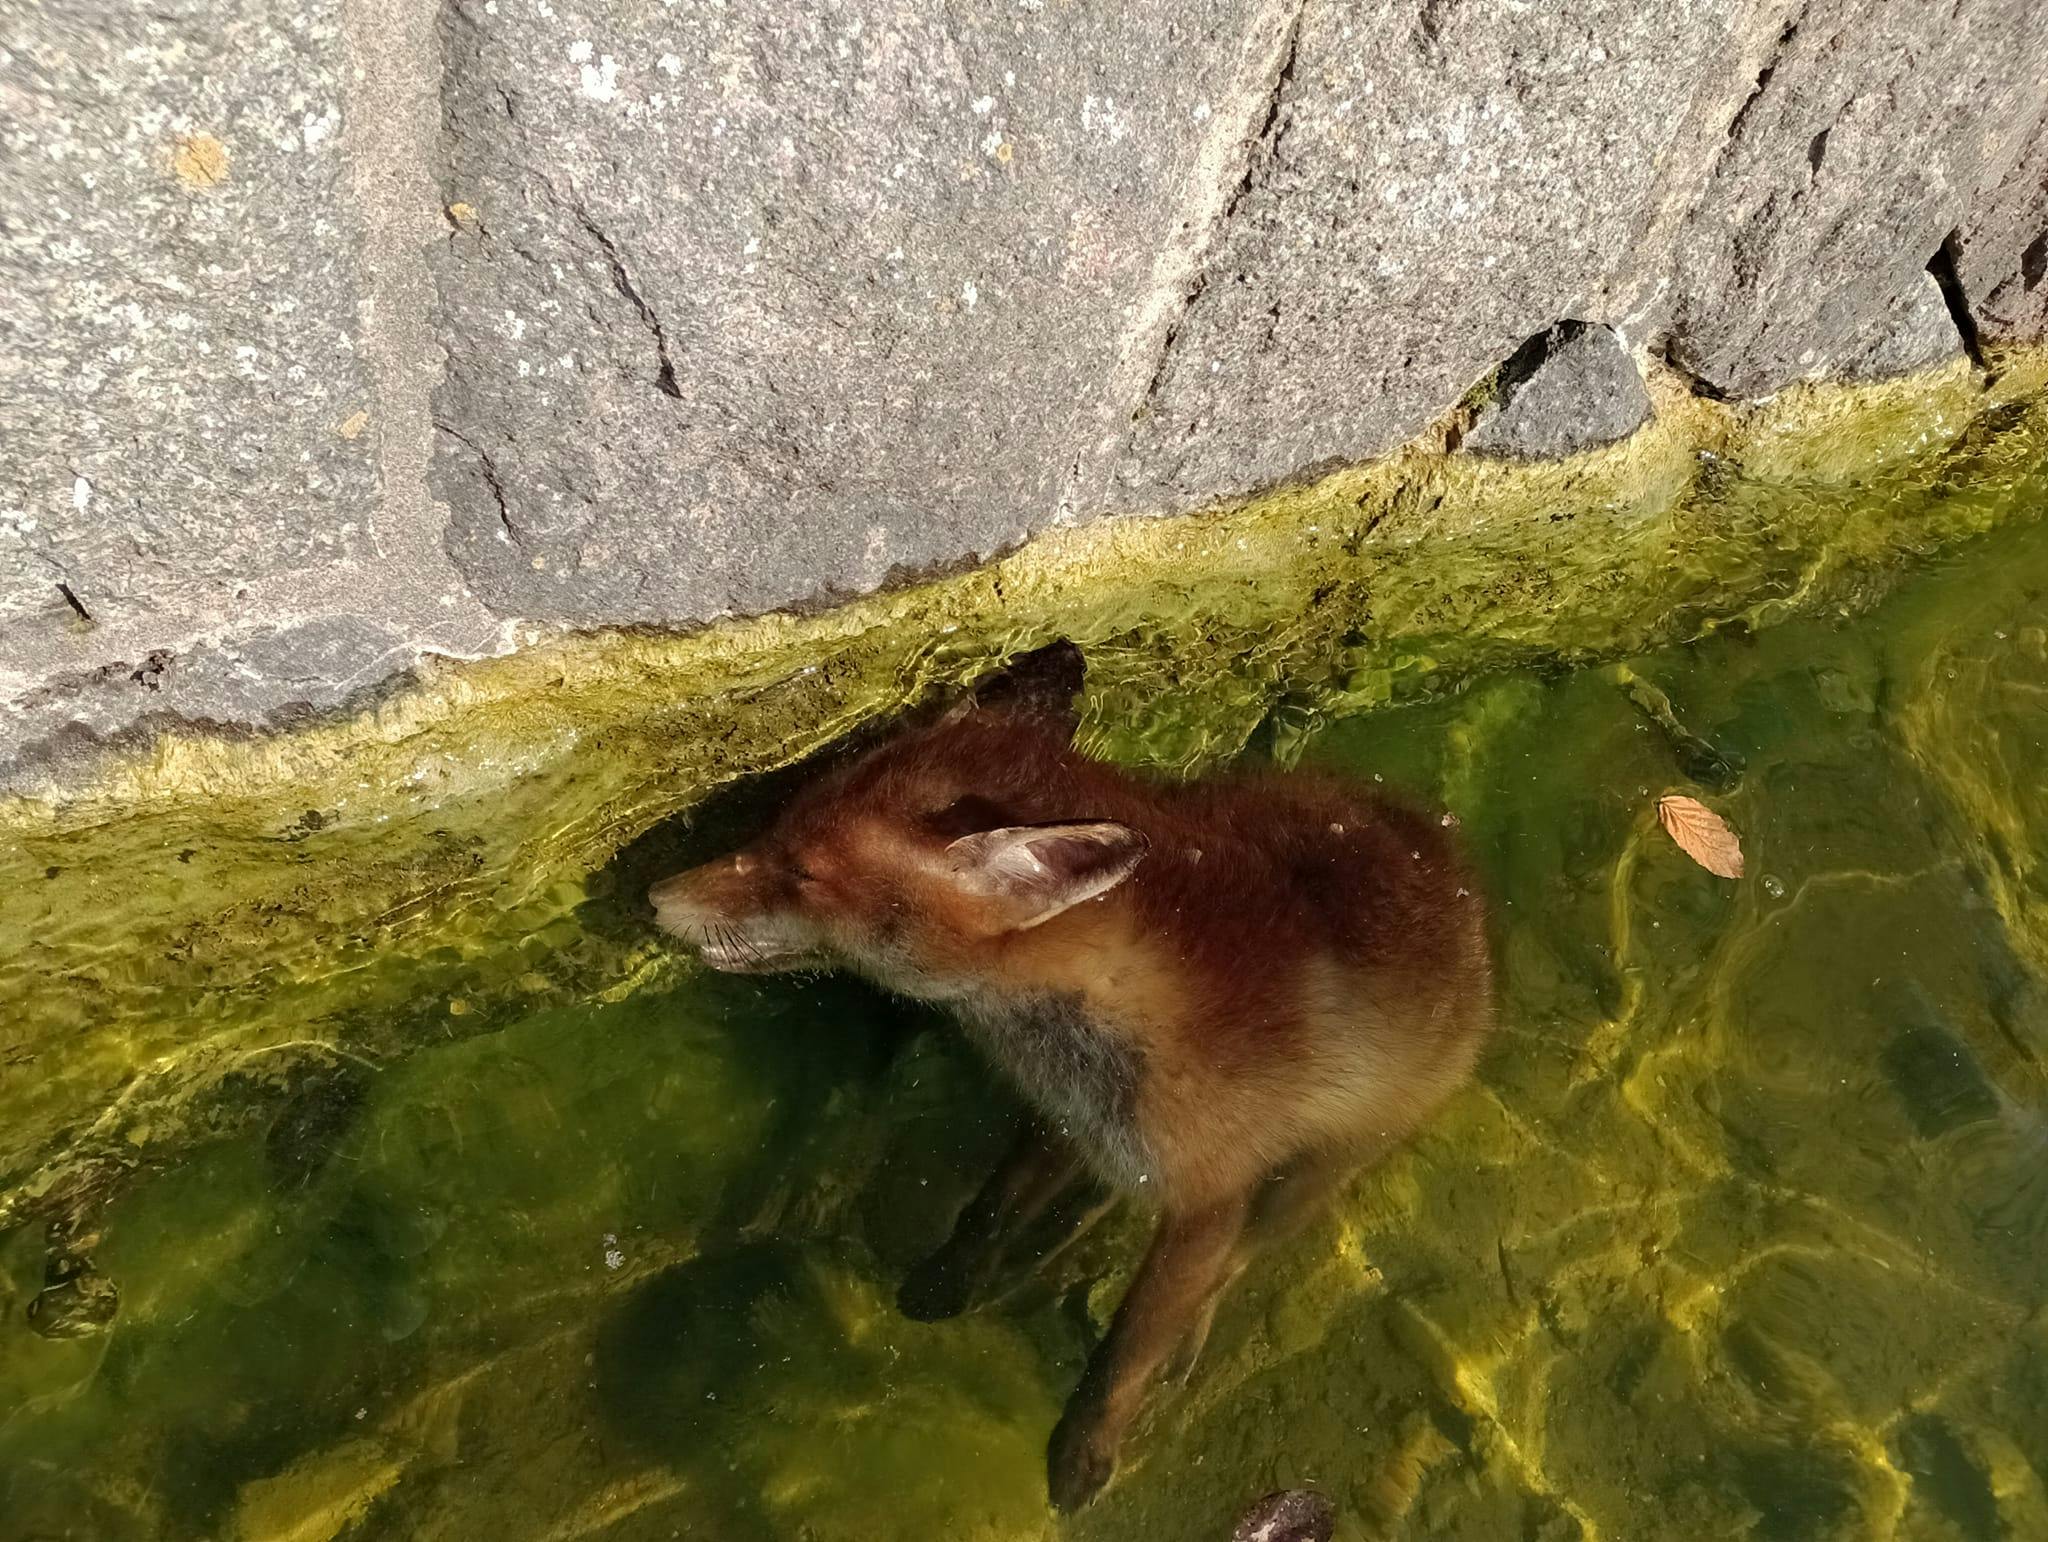 En ræv er på tragisk vis druknet i Søerne i København - formentlig fordi den ikke kunne komme op af vandet, fordi der er ingen trappe eller lignende er.
